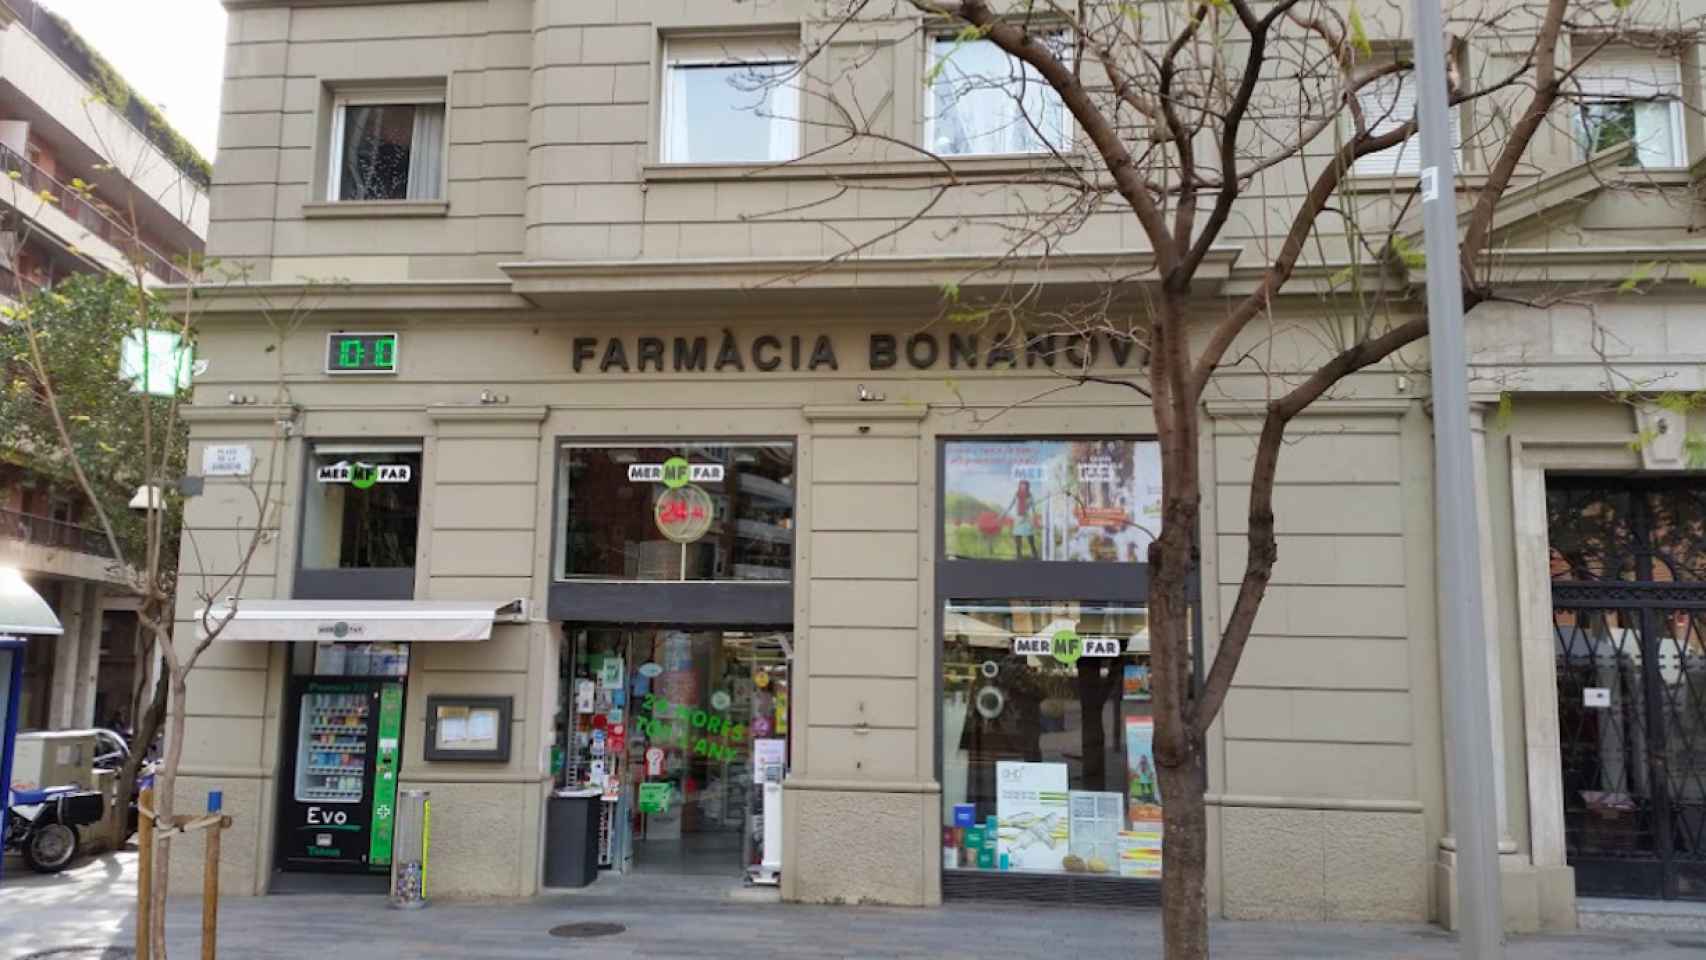 Foto de la Farmacia Bonanova, una de las tres abiertas 24/7 en Sarrià Sant Gervasi / GOOGLE MAPS